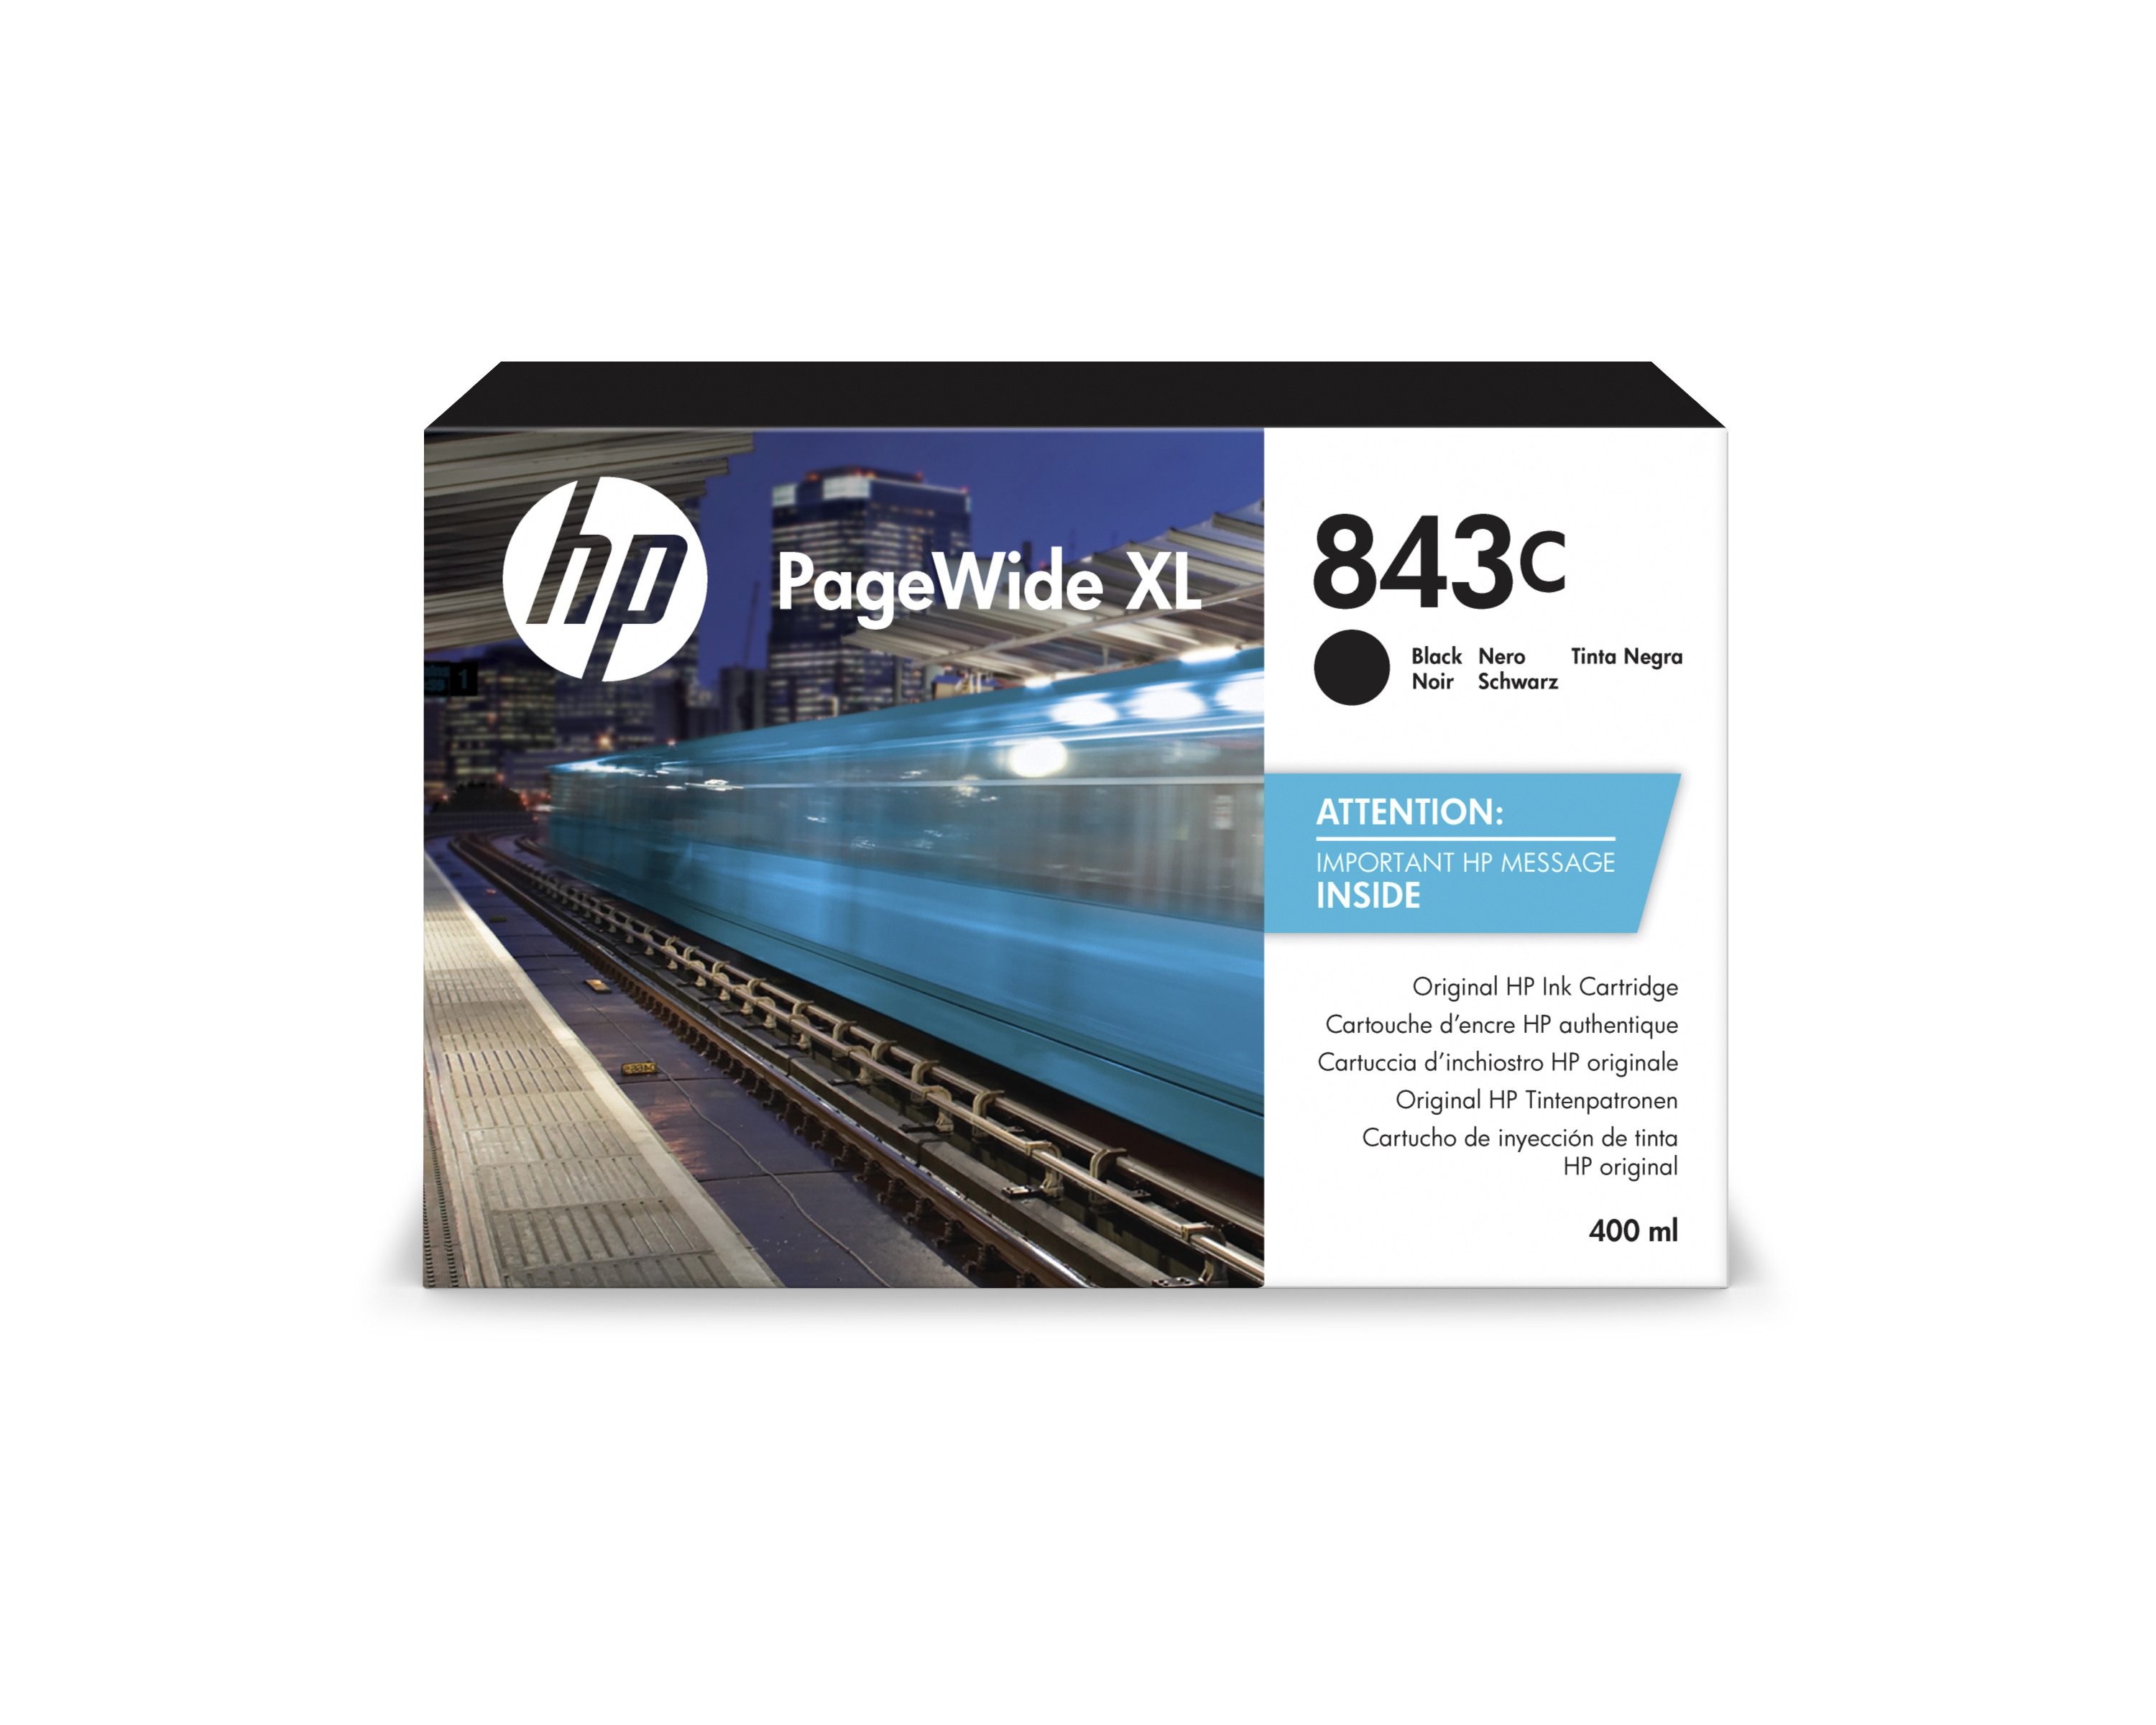 HP 843C PageWide Tinte schwarz - 400 ml